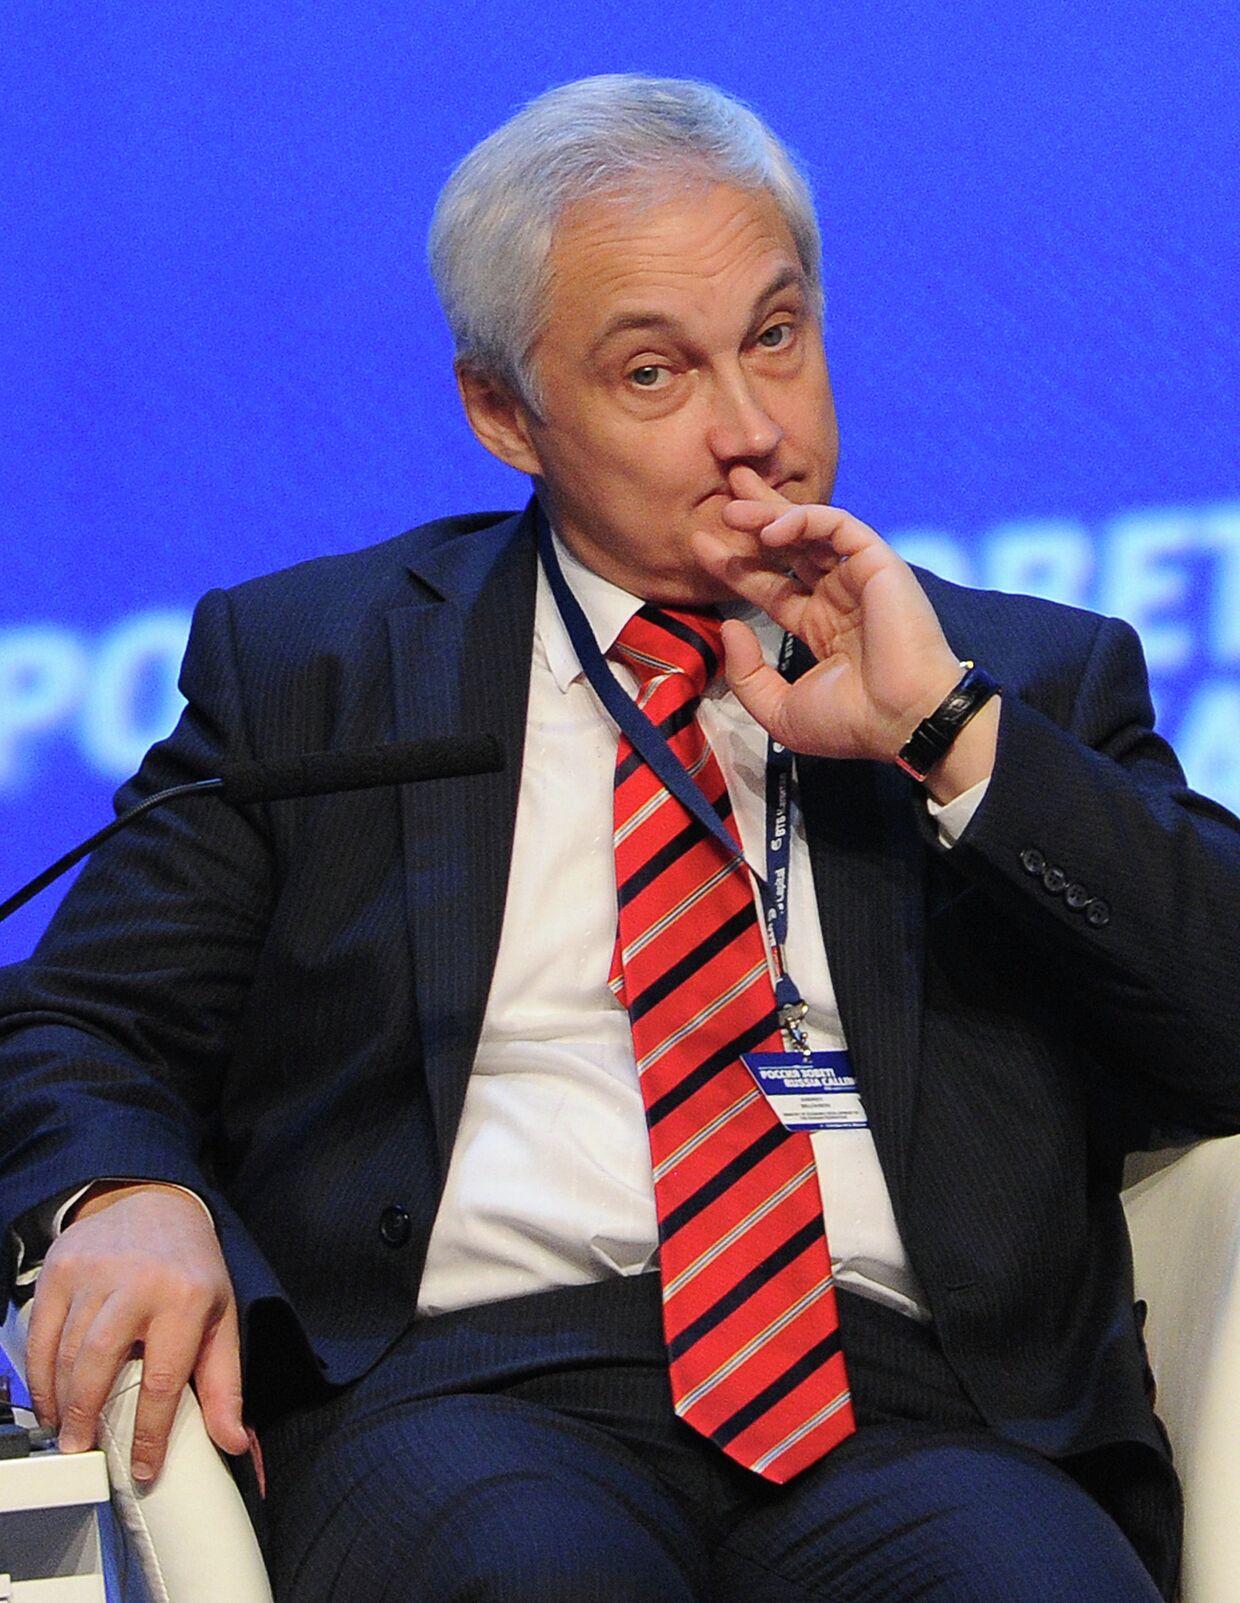 Министр экономического развития РФ Андрей Белоусов